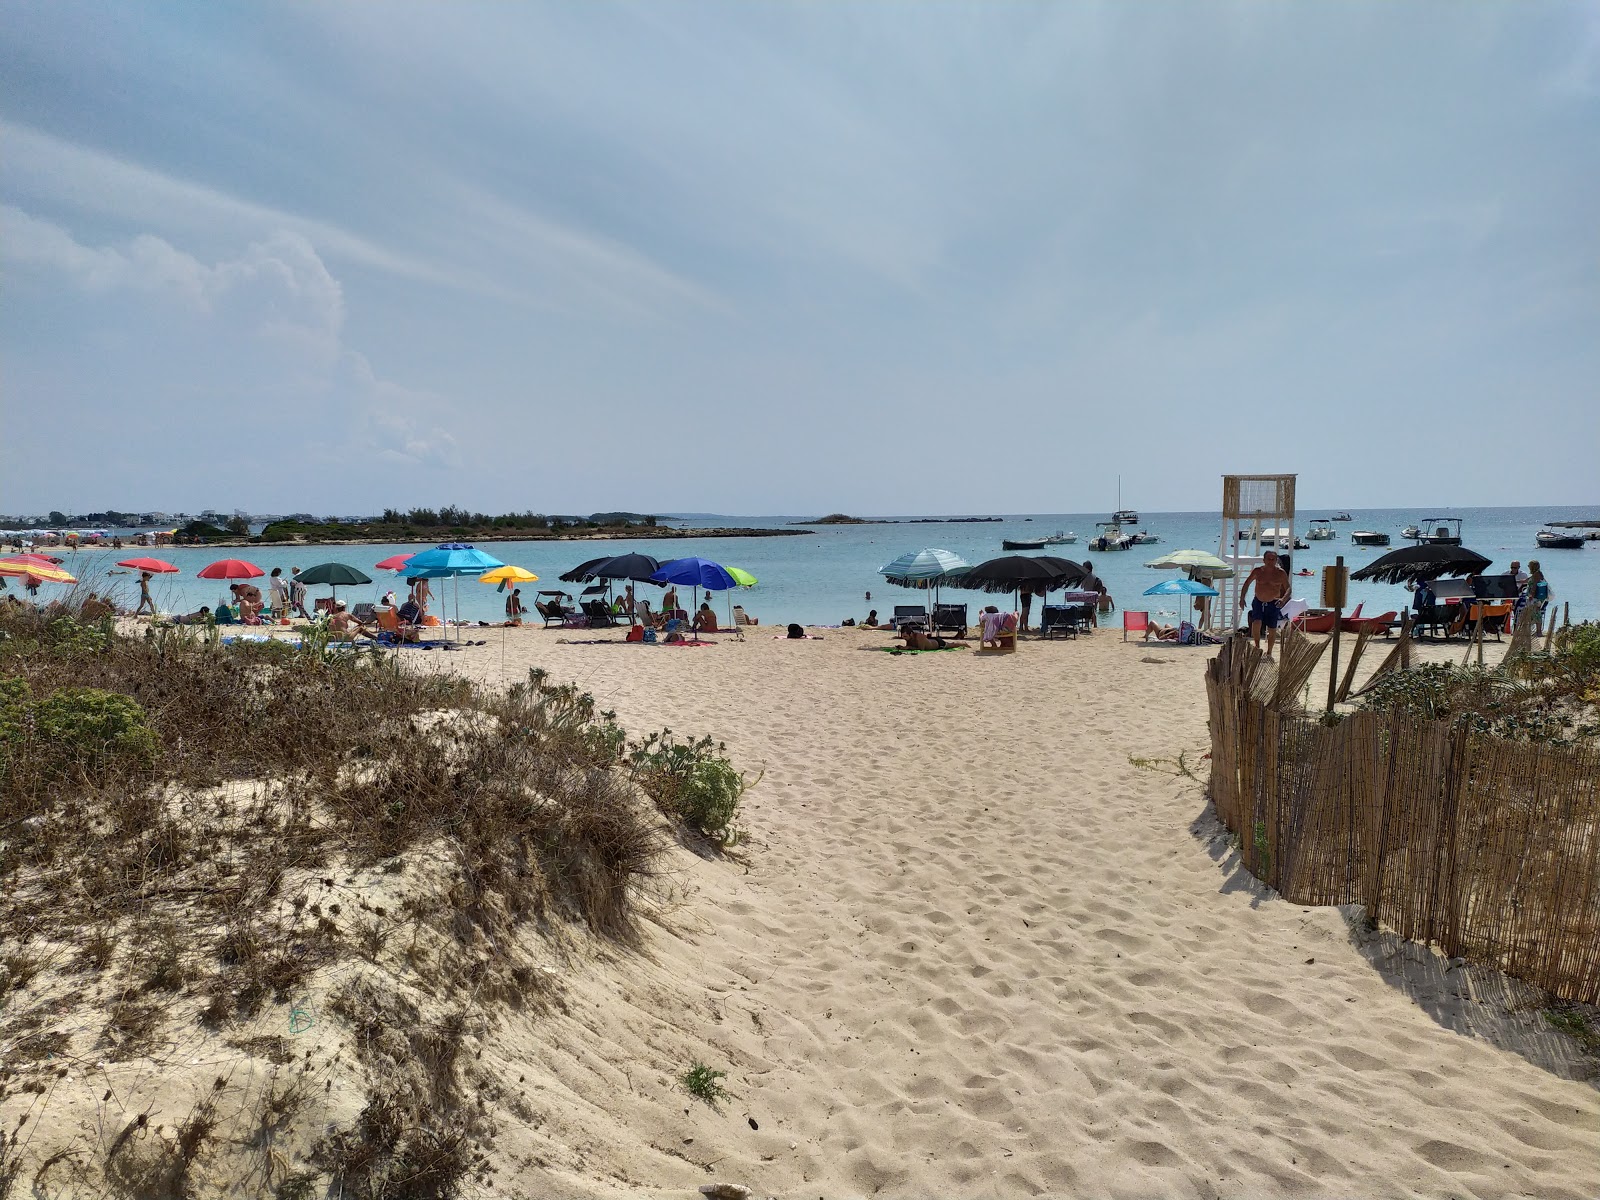 Riccione beach'in fotoğrafı geniş plaj ile birlikte